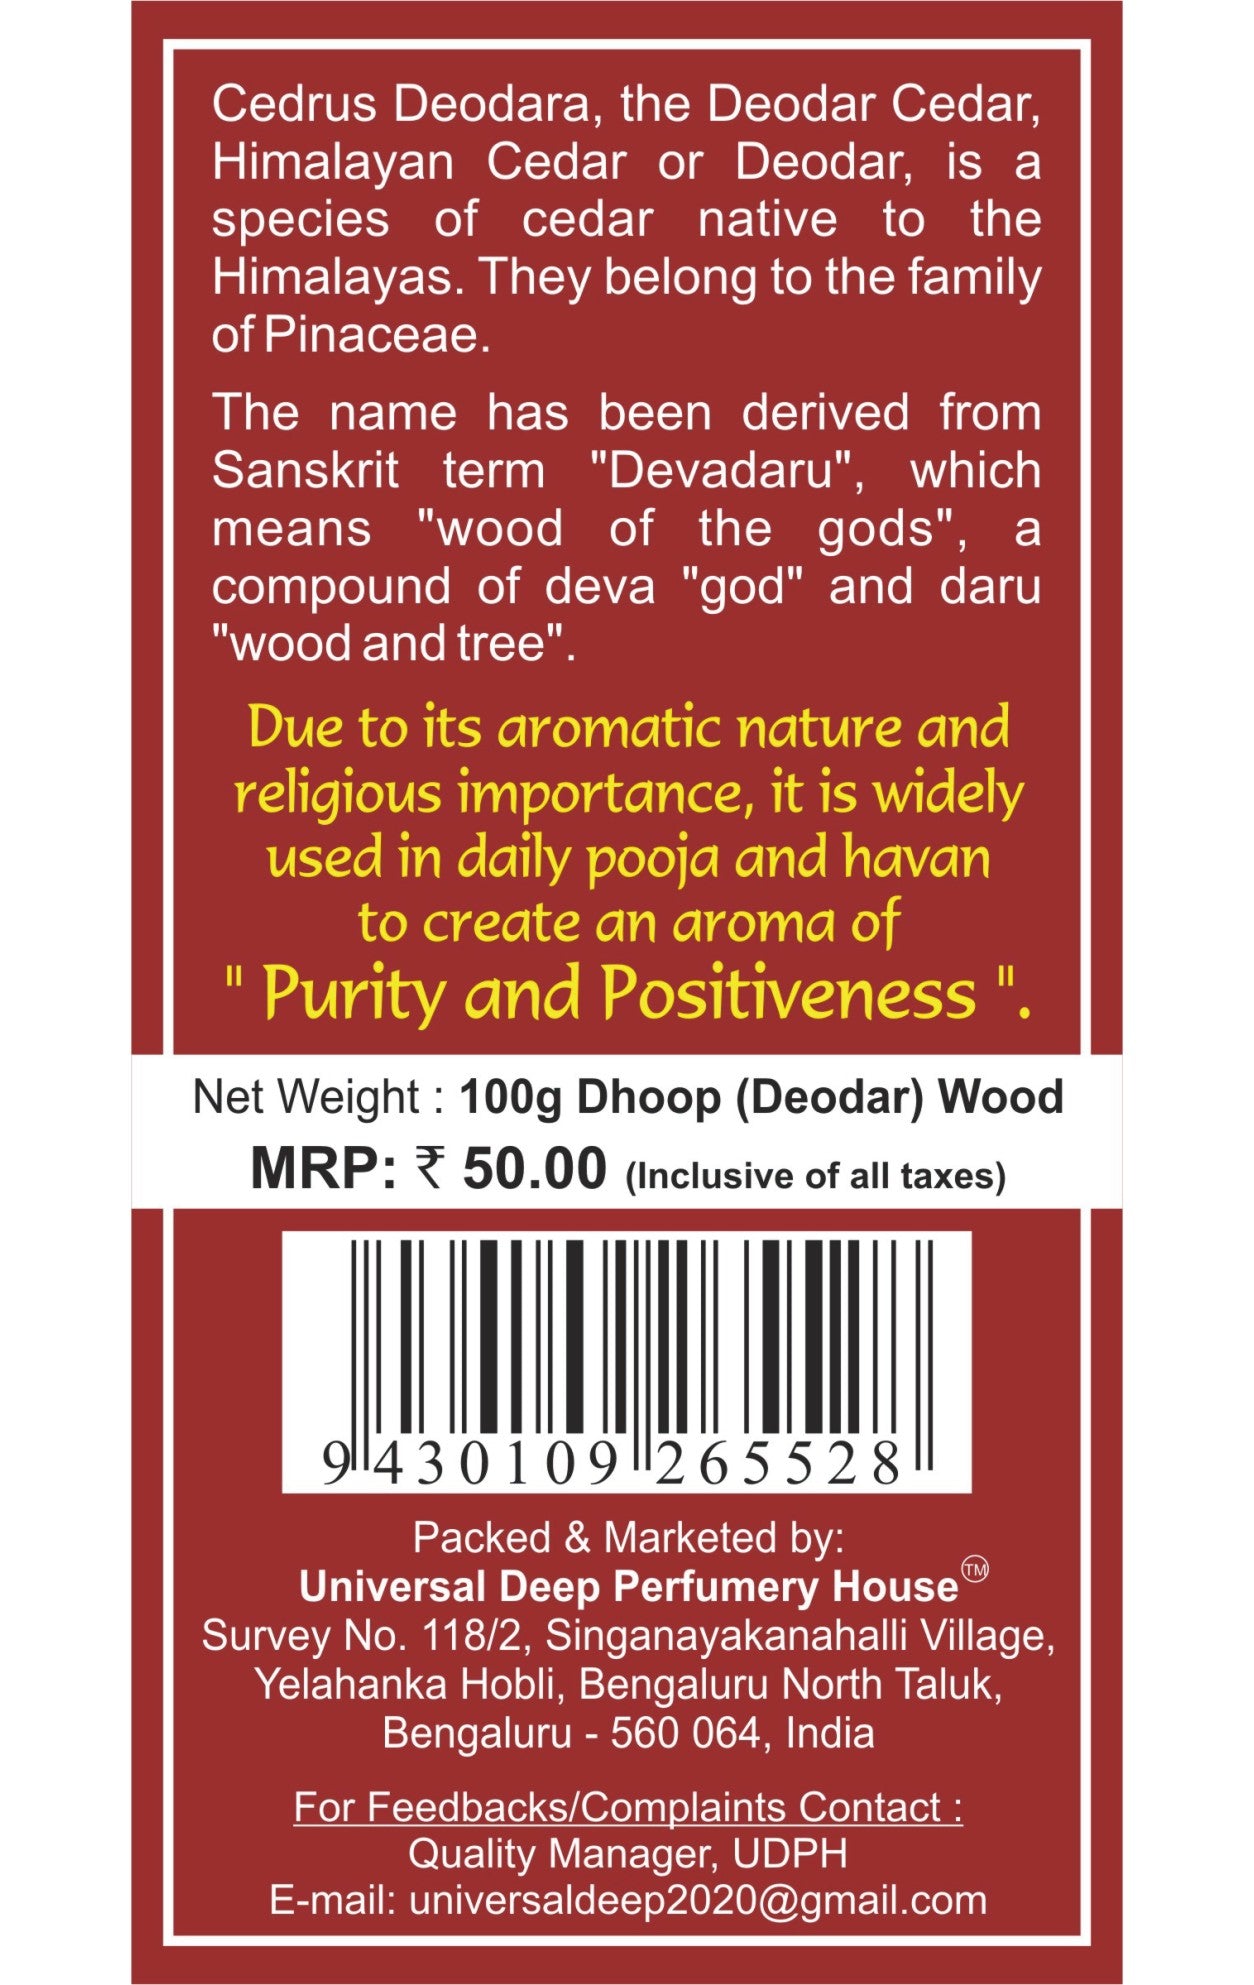 Dhoop (Deodar) hout vir daaglikse pooja en Havans_100g-pak (suiwer, aromaties en 100% natuurlik) - "Wout van die gode"